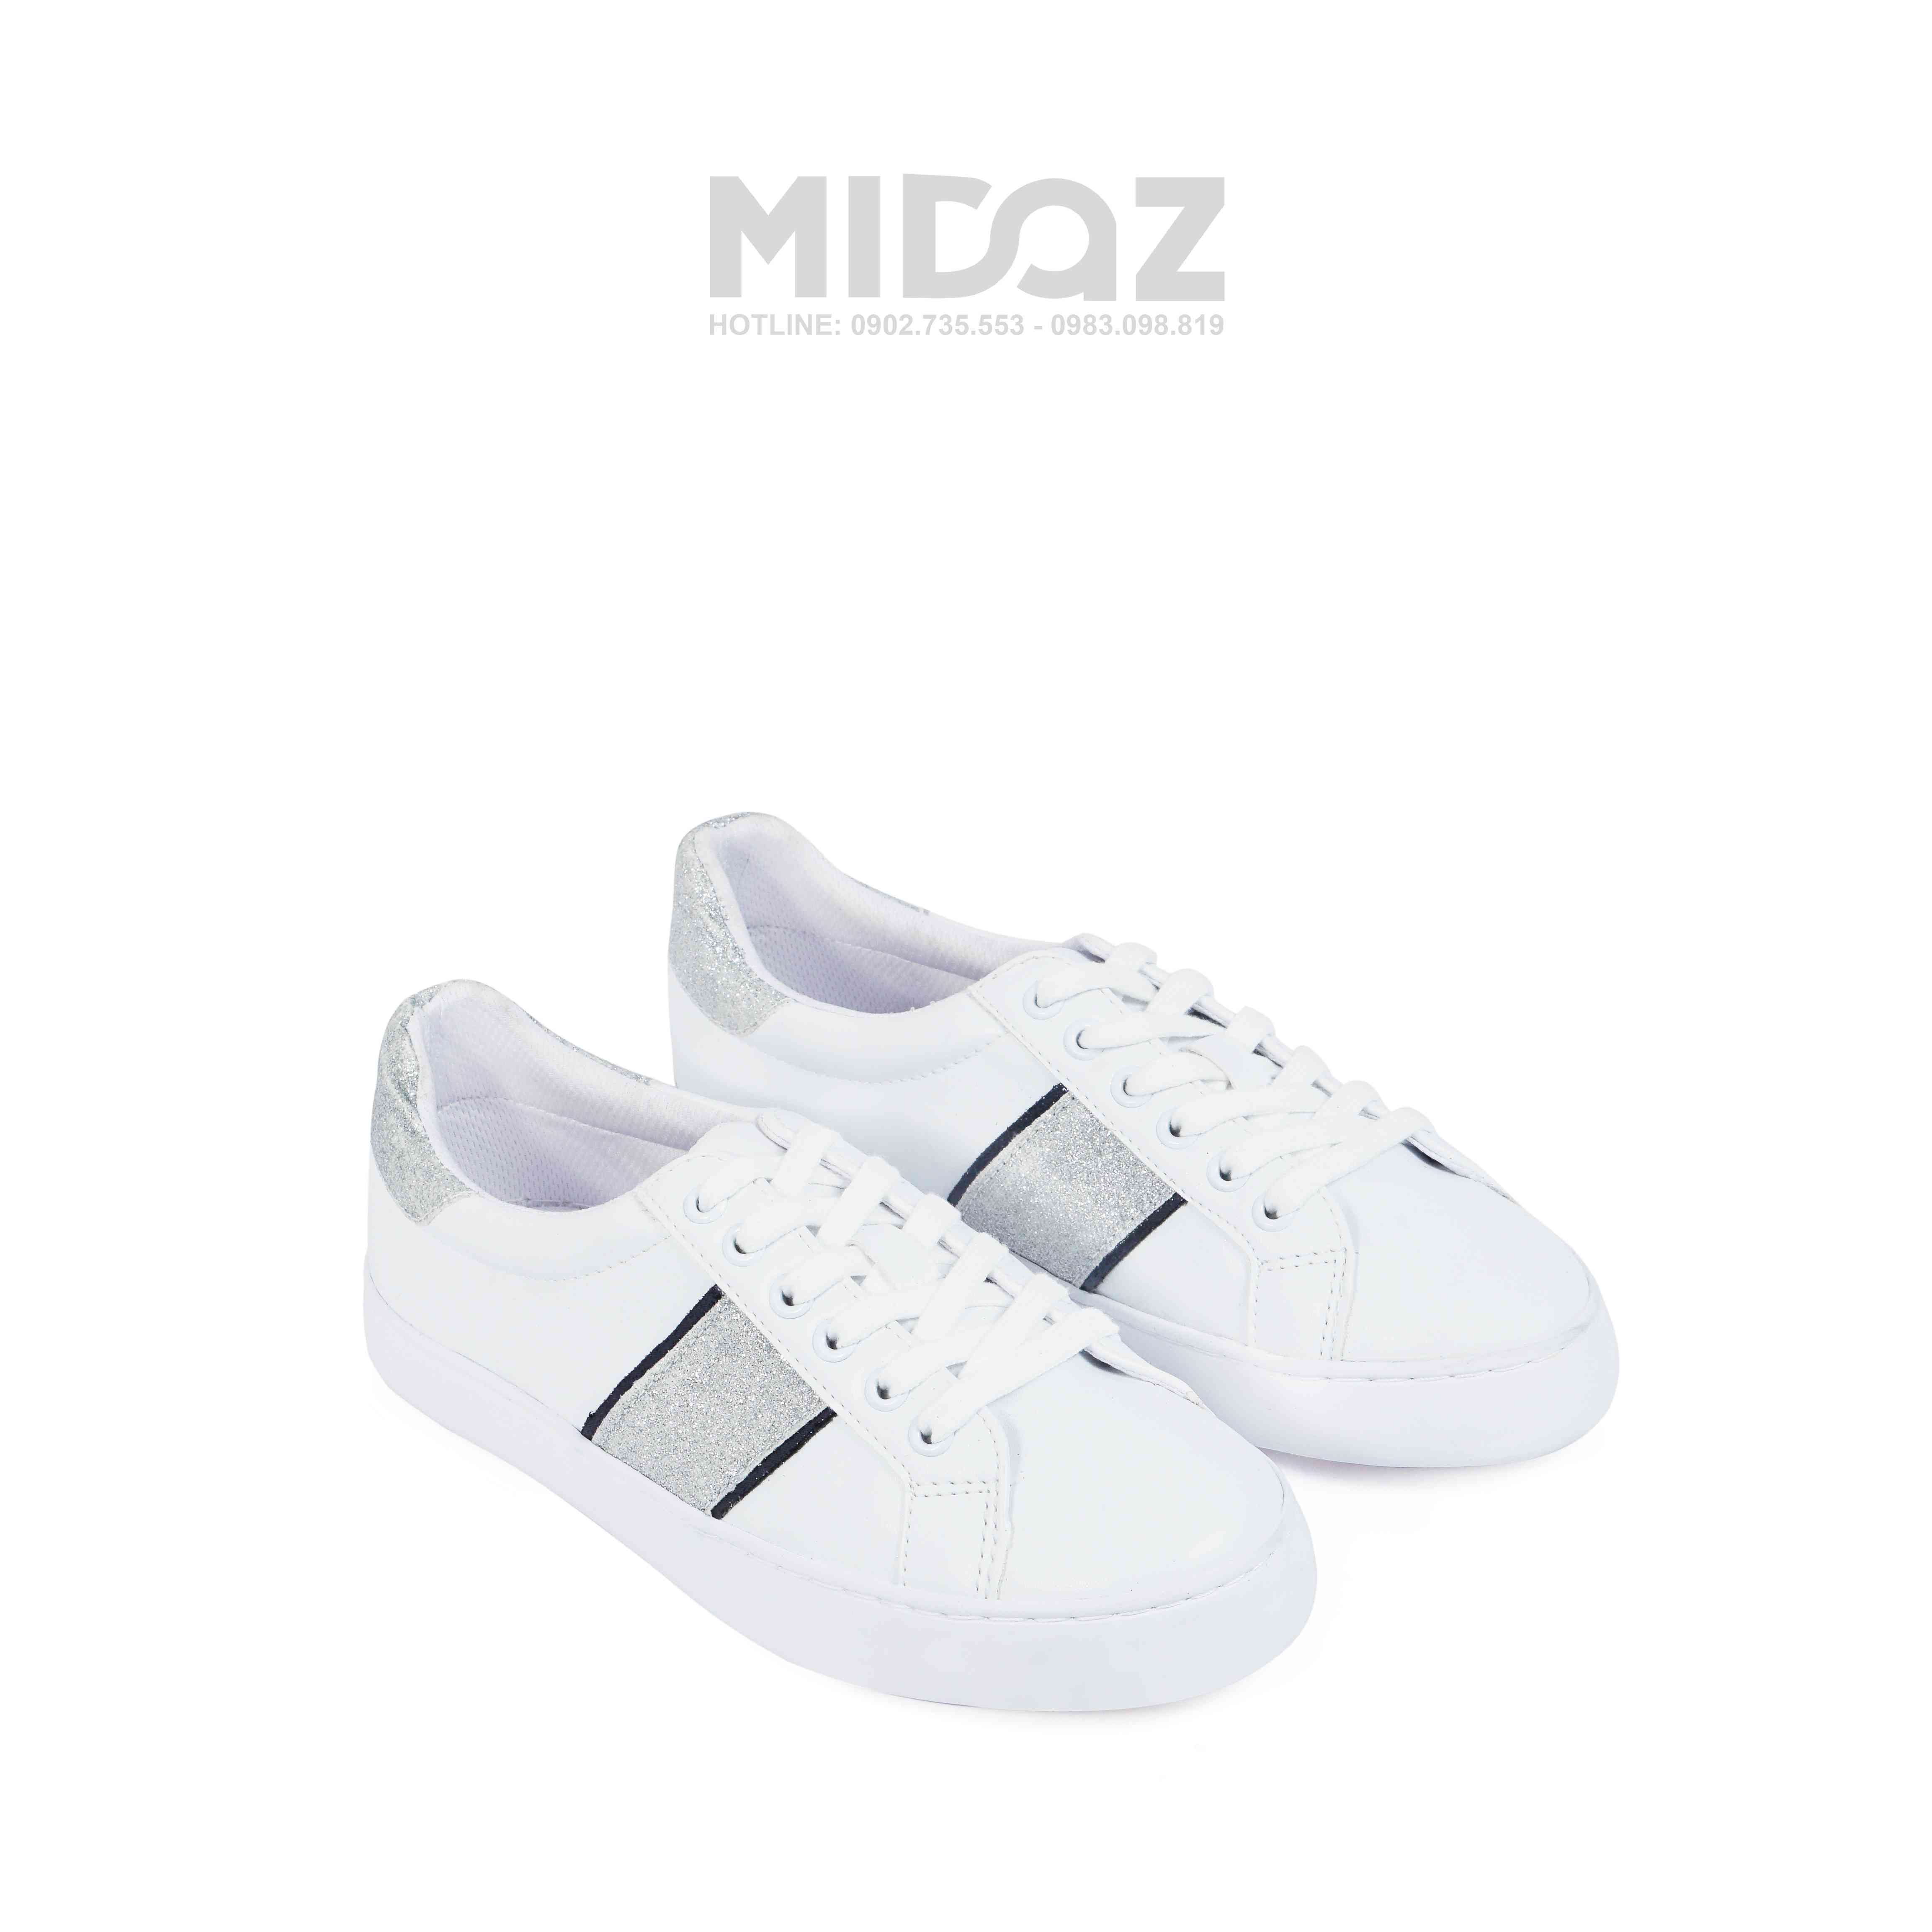 Midaz- BST mới nhất của thương hiệu hàng đầu về sneaker. 11